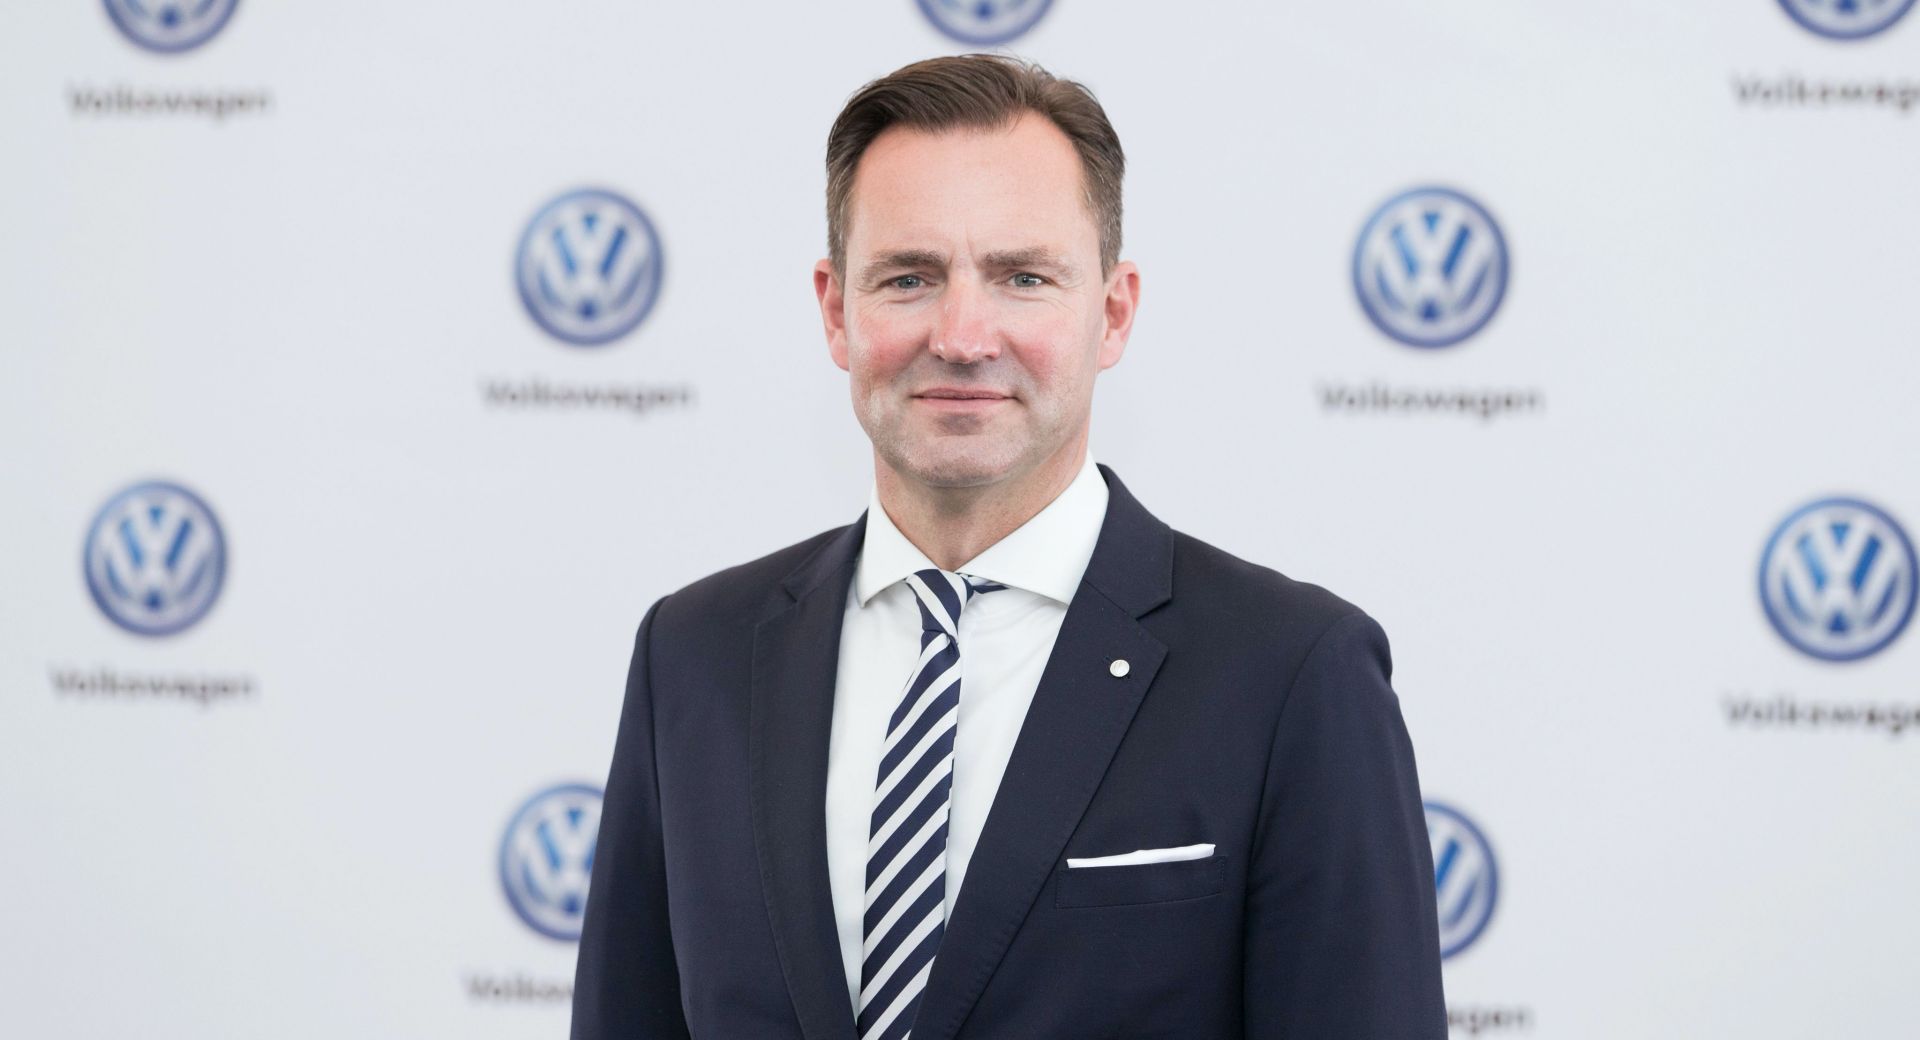 Thomas Schäfer nowym szefem Skoda Auto